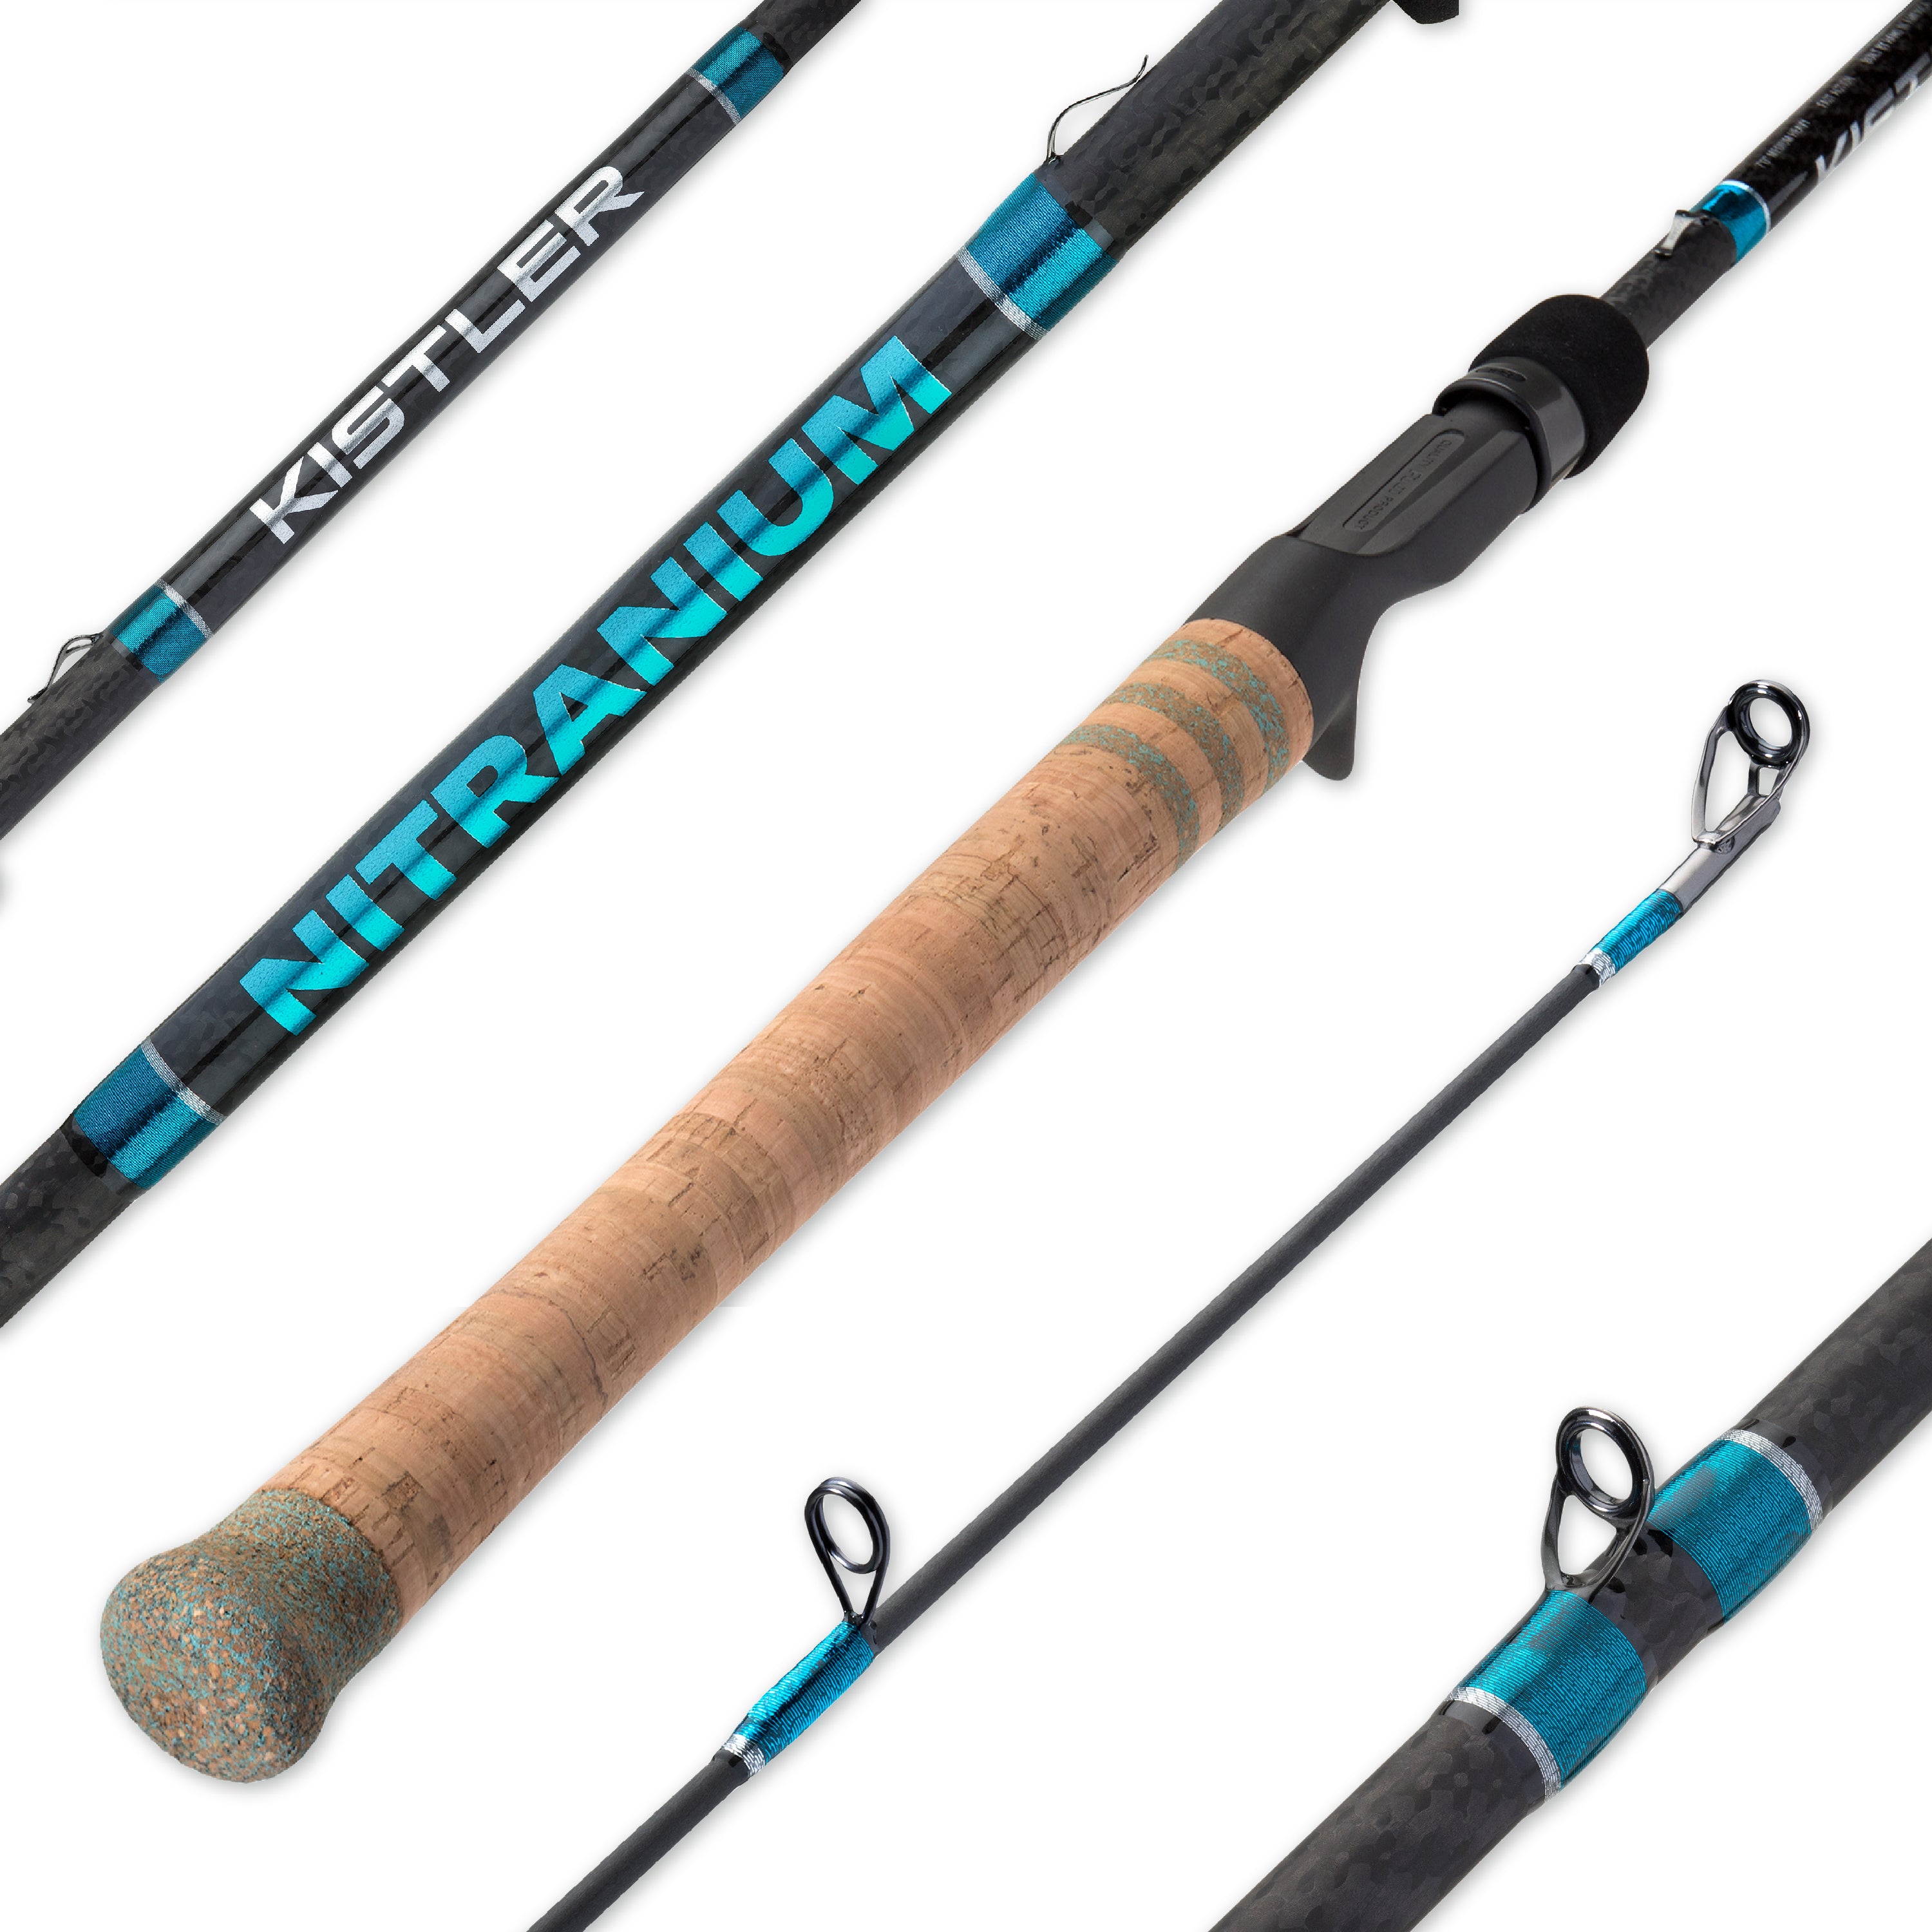 Review – Kistler Fishing Rods